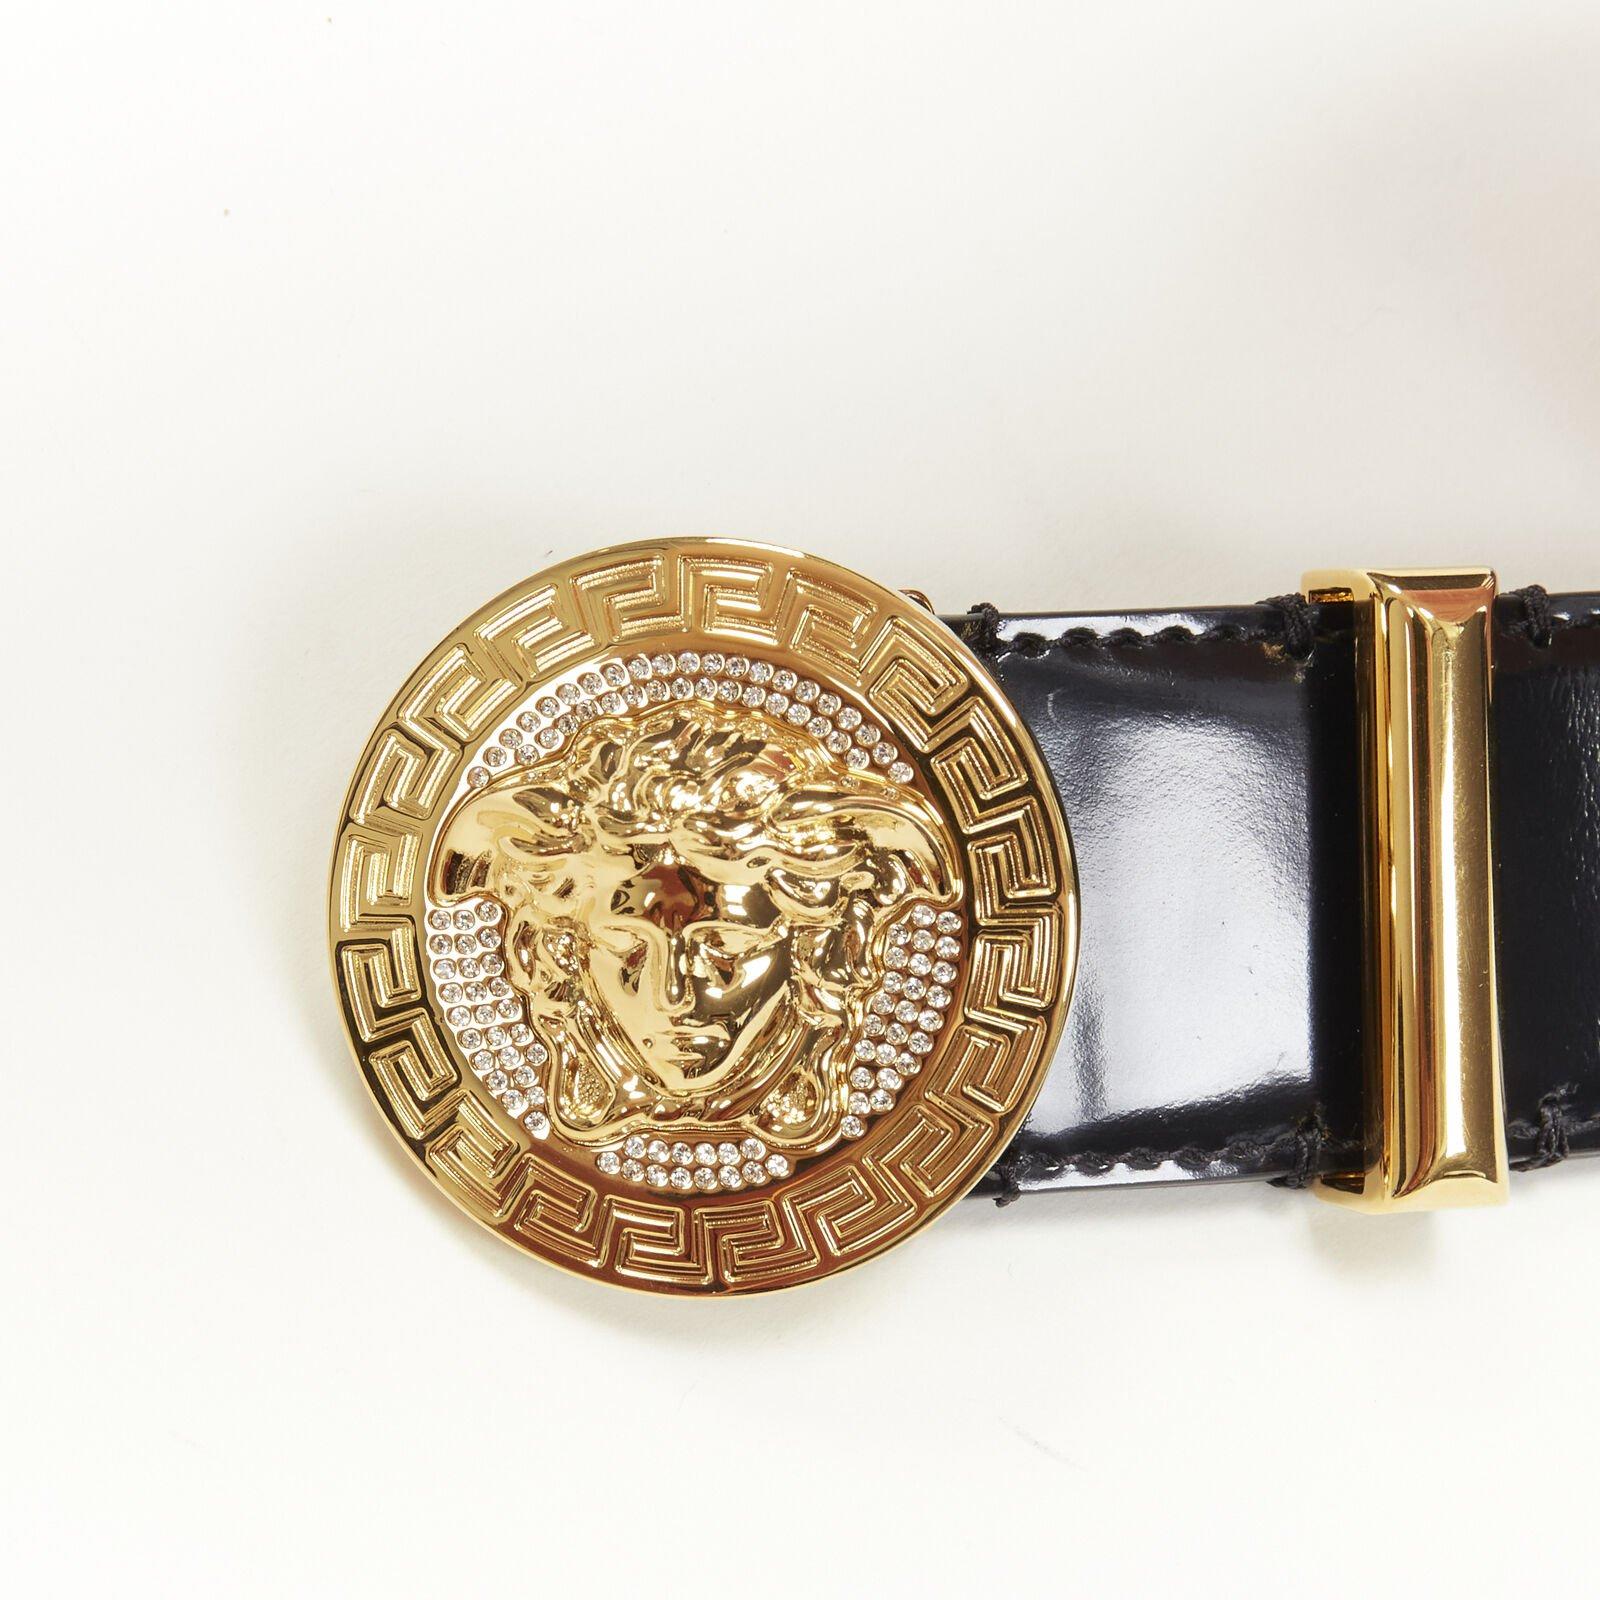 VERSACE Medusa Biggie crystal gold Medallion coin leather belt 105cm 40-44